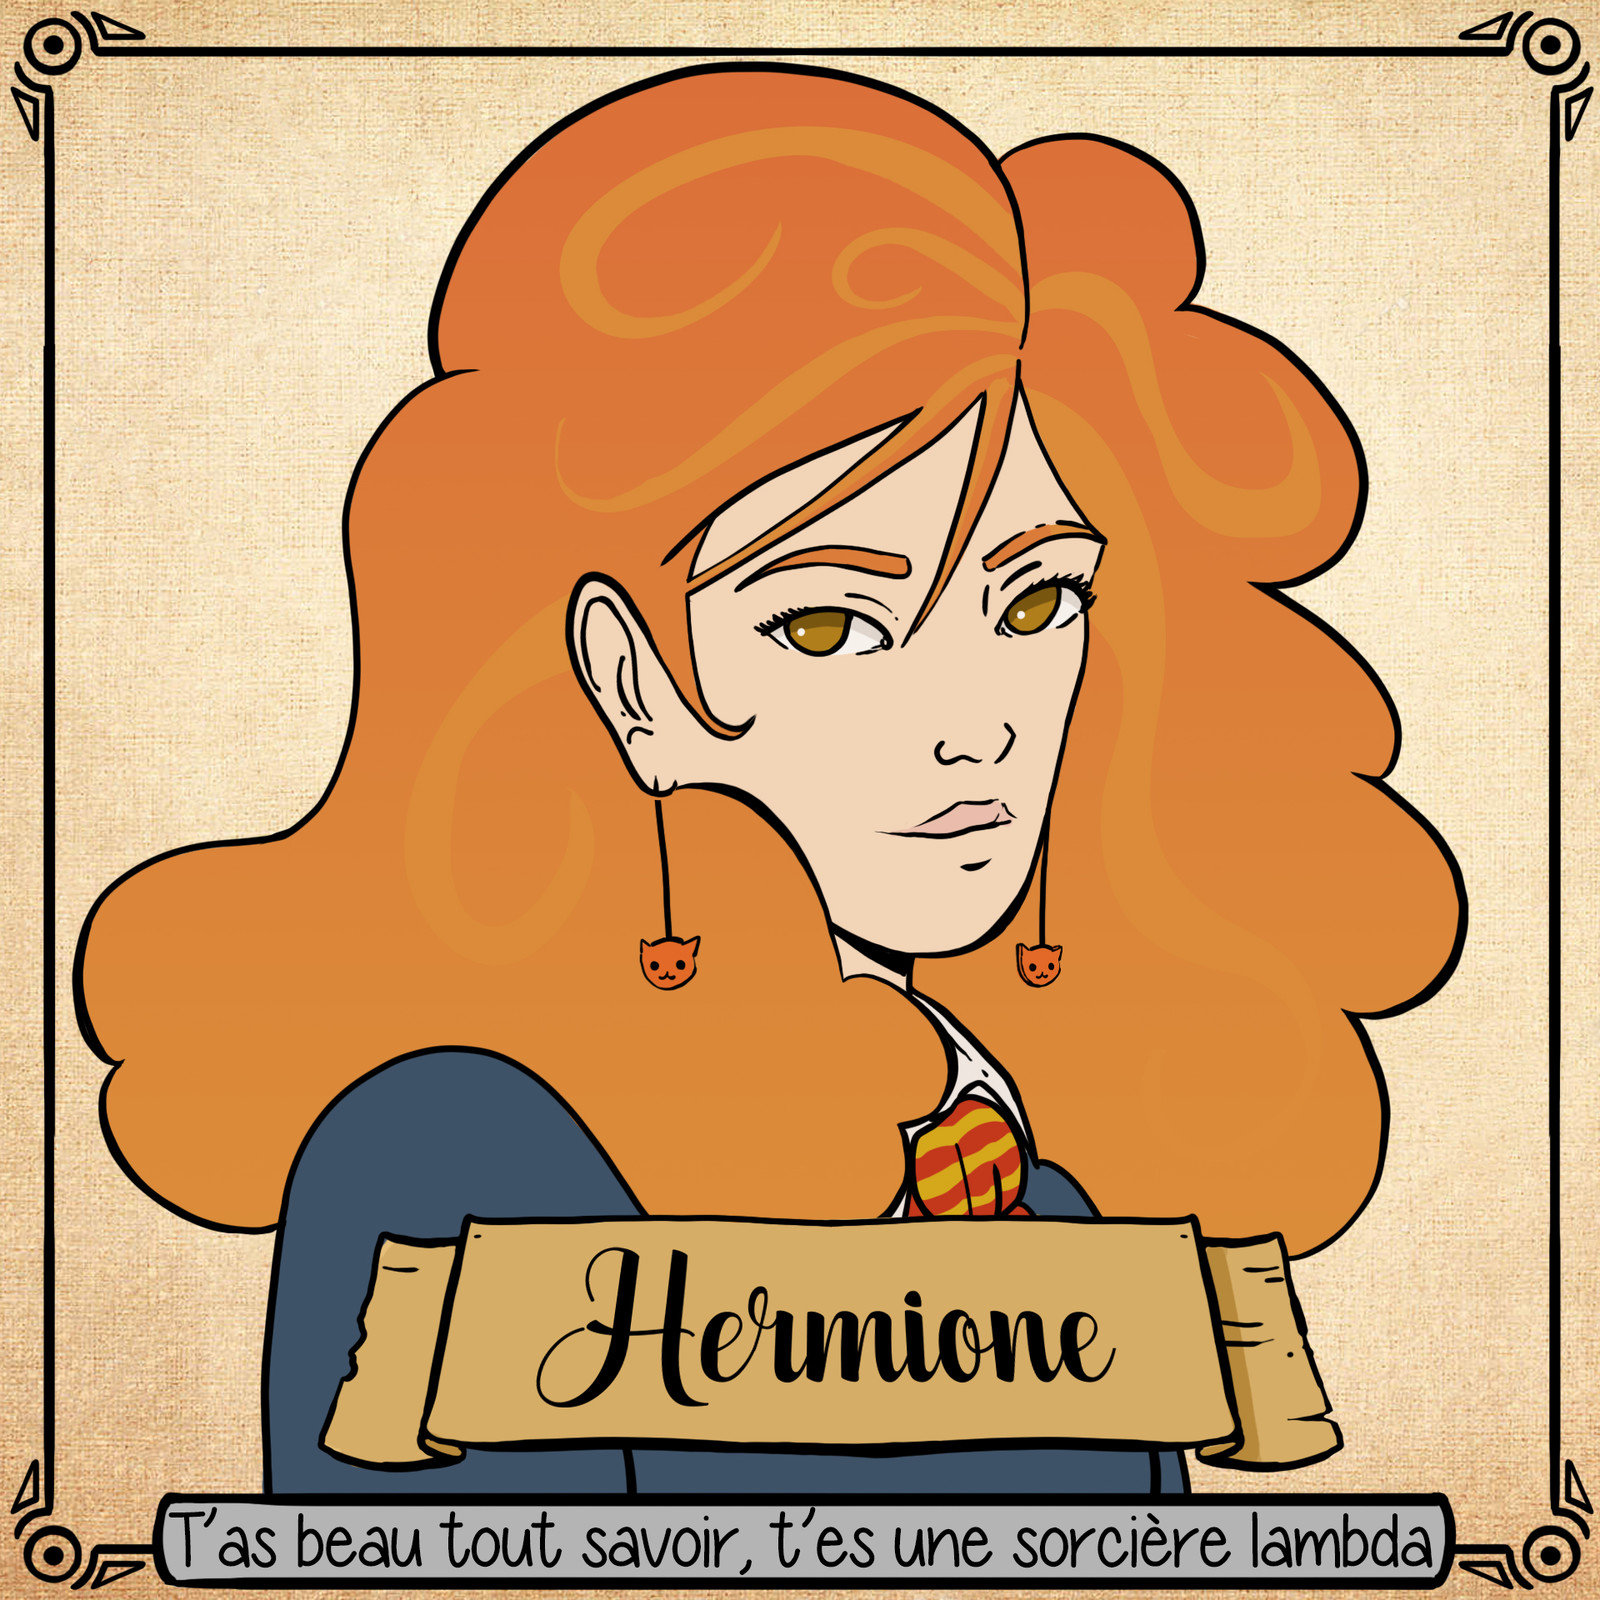 Hermione a beau être cool, c'est une villageoise, comme les autres !